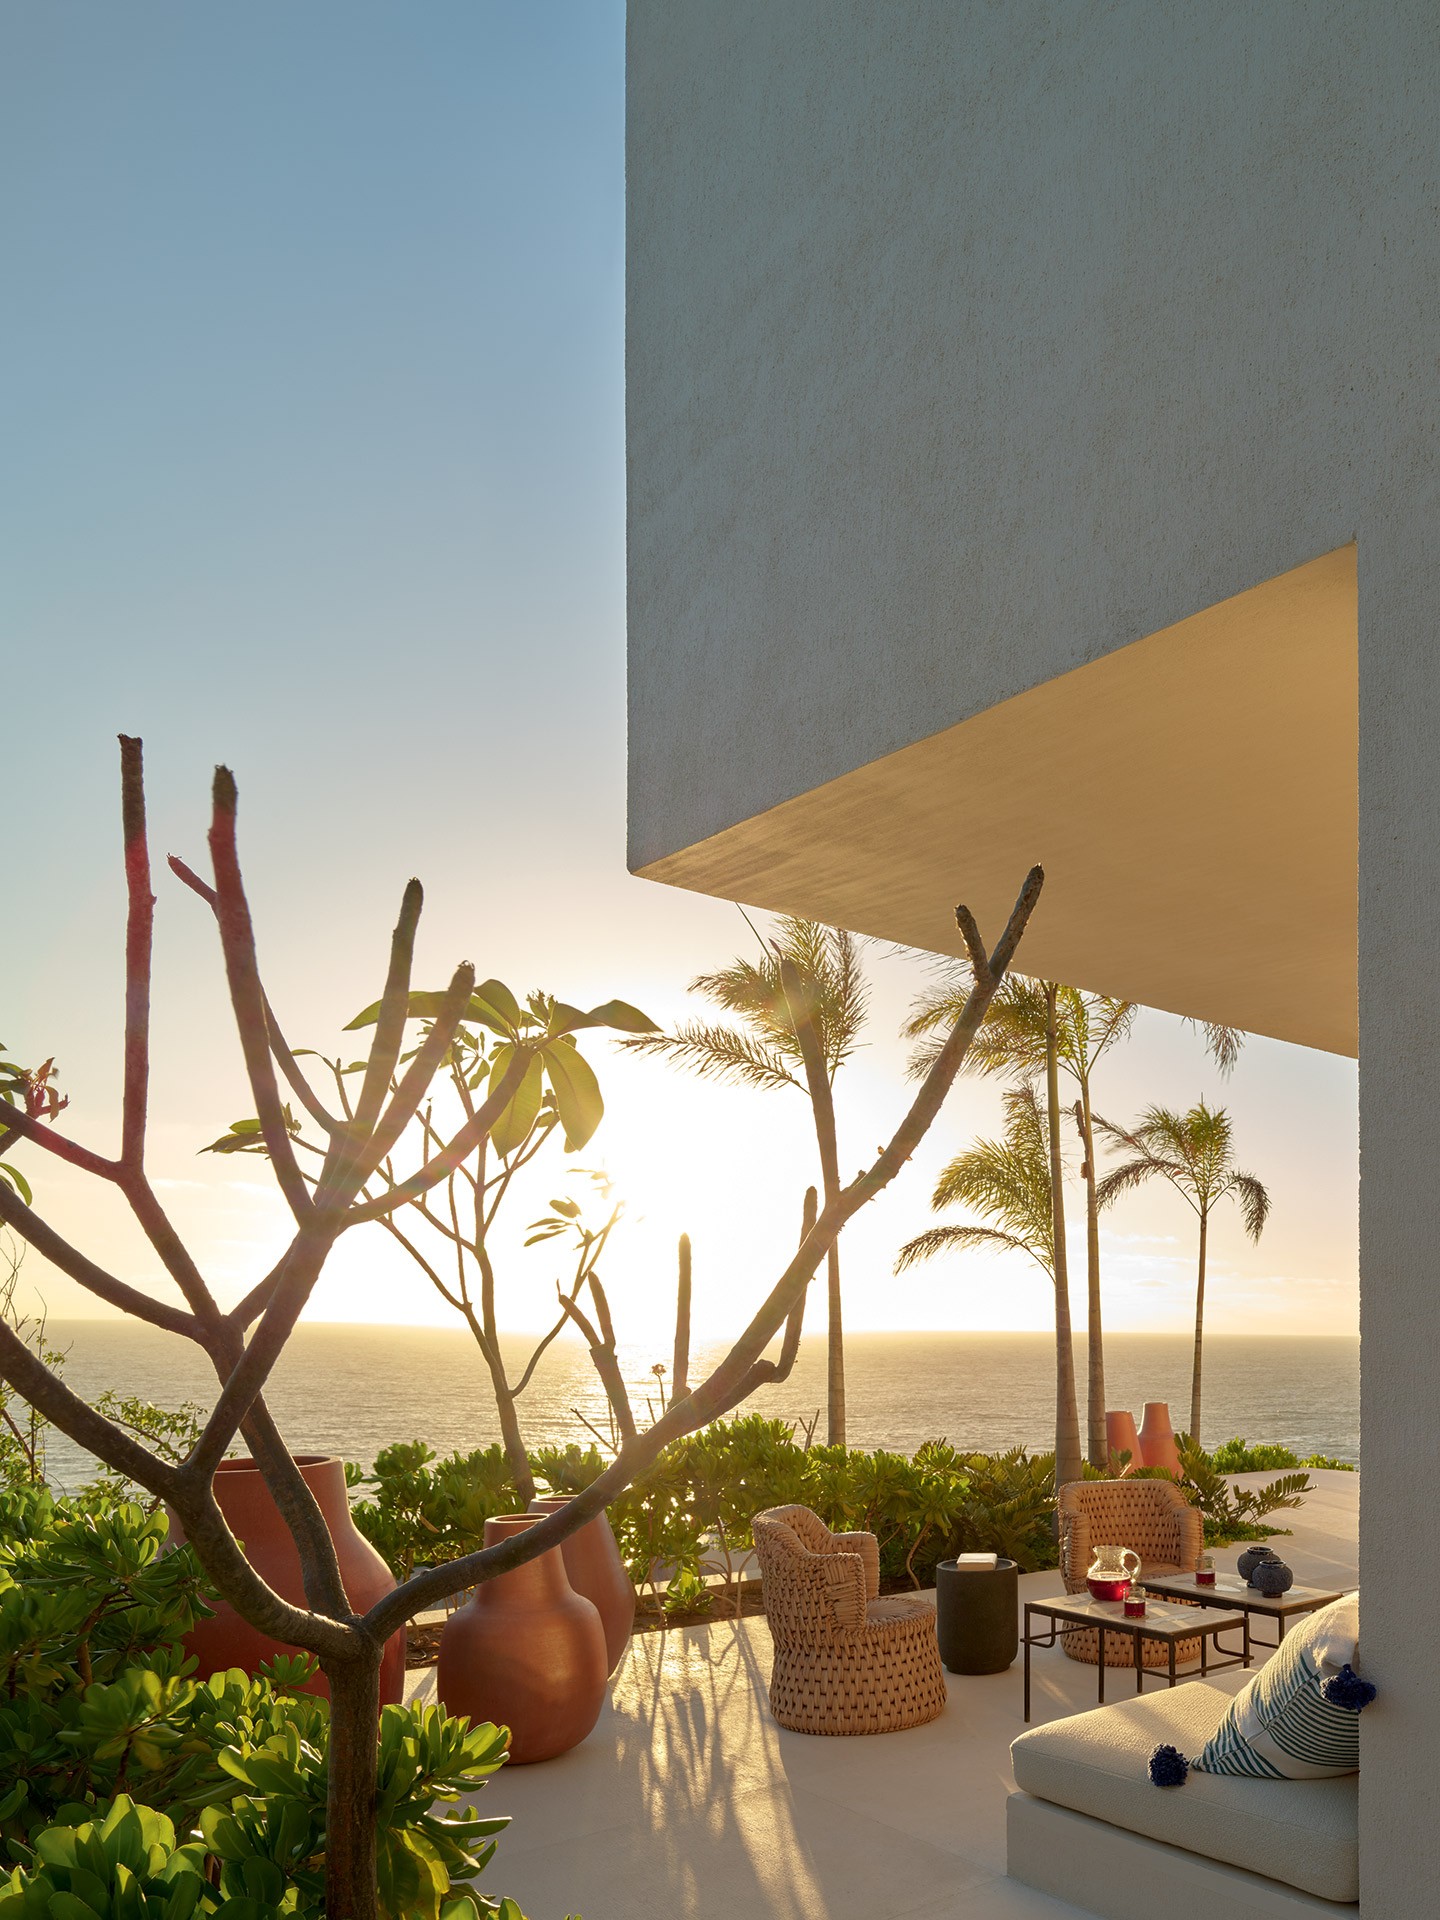 Paisajes notables, ambientes integrados y numerosas obras de arte conforman esta casa en el Pacífico (Foto: Fernando Marroquin)